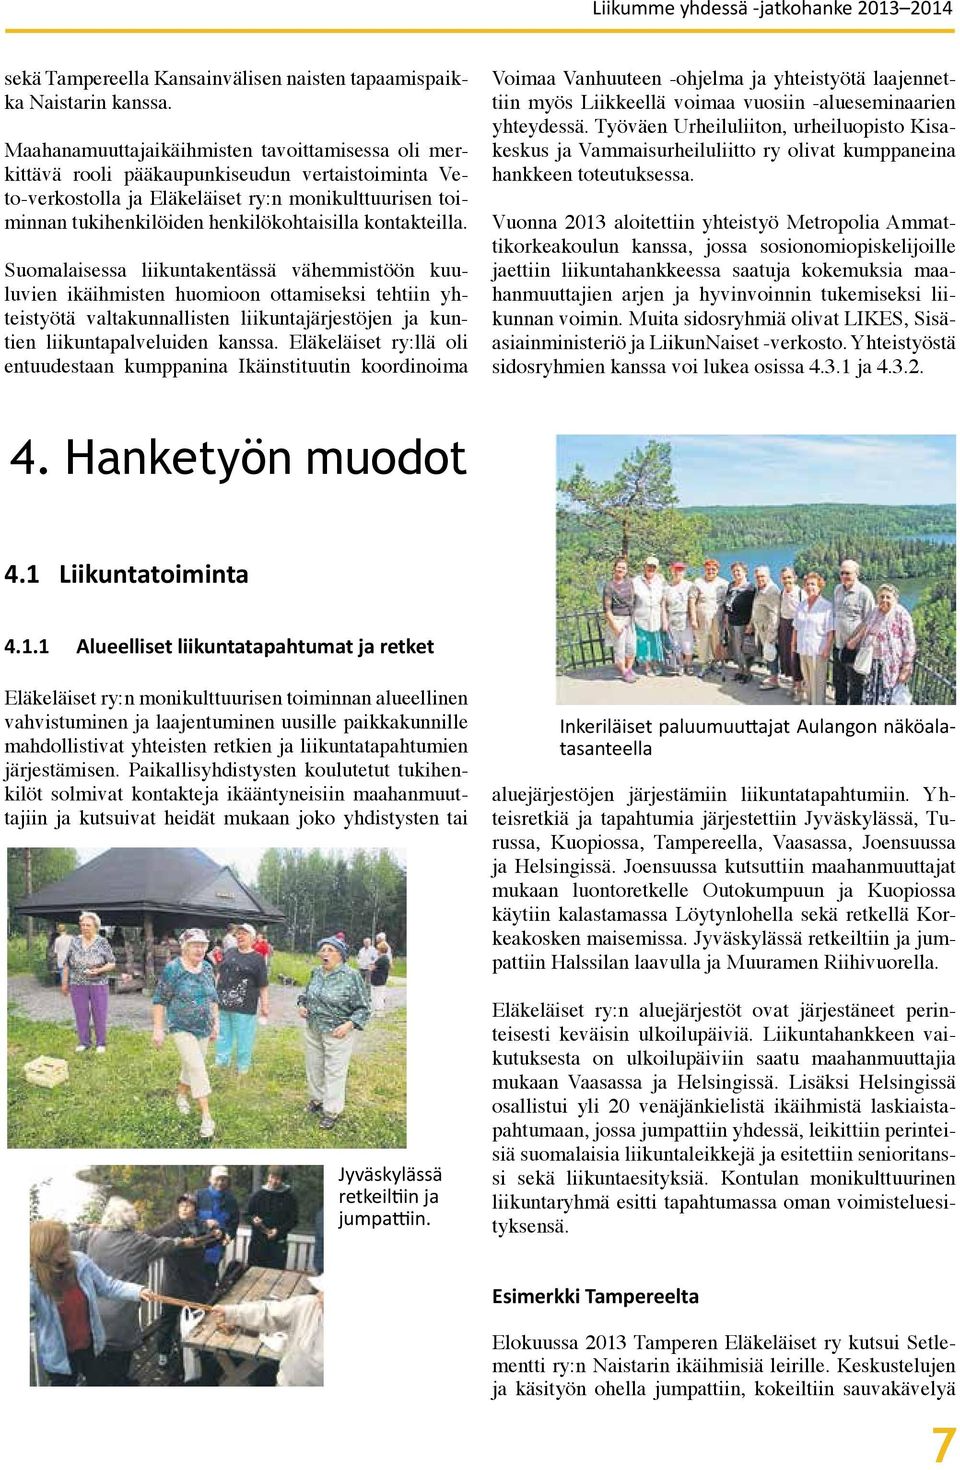 kontakteilla. Suomalaisessa liikuntakentässä vähemmistöön kuuluvien ikäihmisten huomioon ottamiseksi tehtiin yhteistyötä valtakunnallisten liikuntajärjestöjen ja kuntien liikuntapalveluiden kanssa.